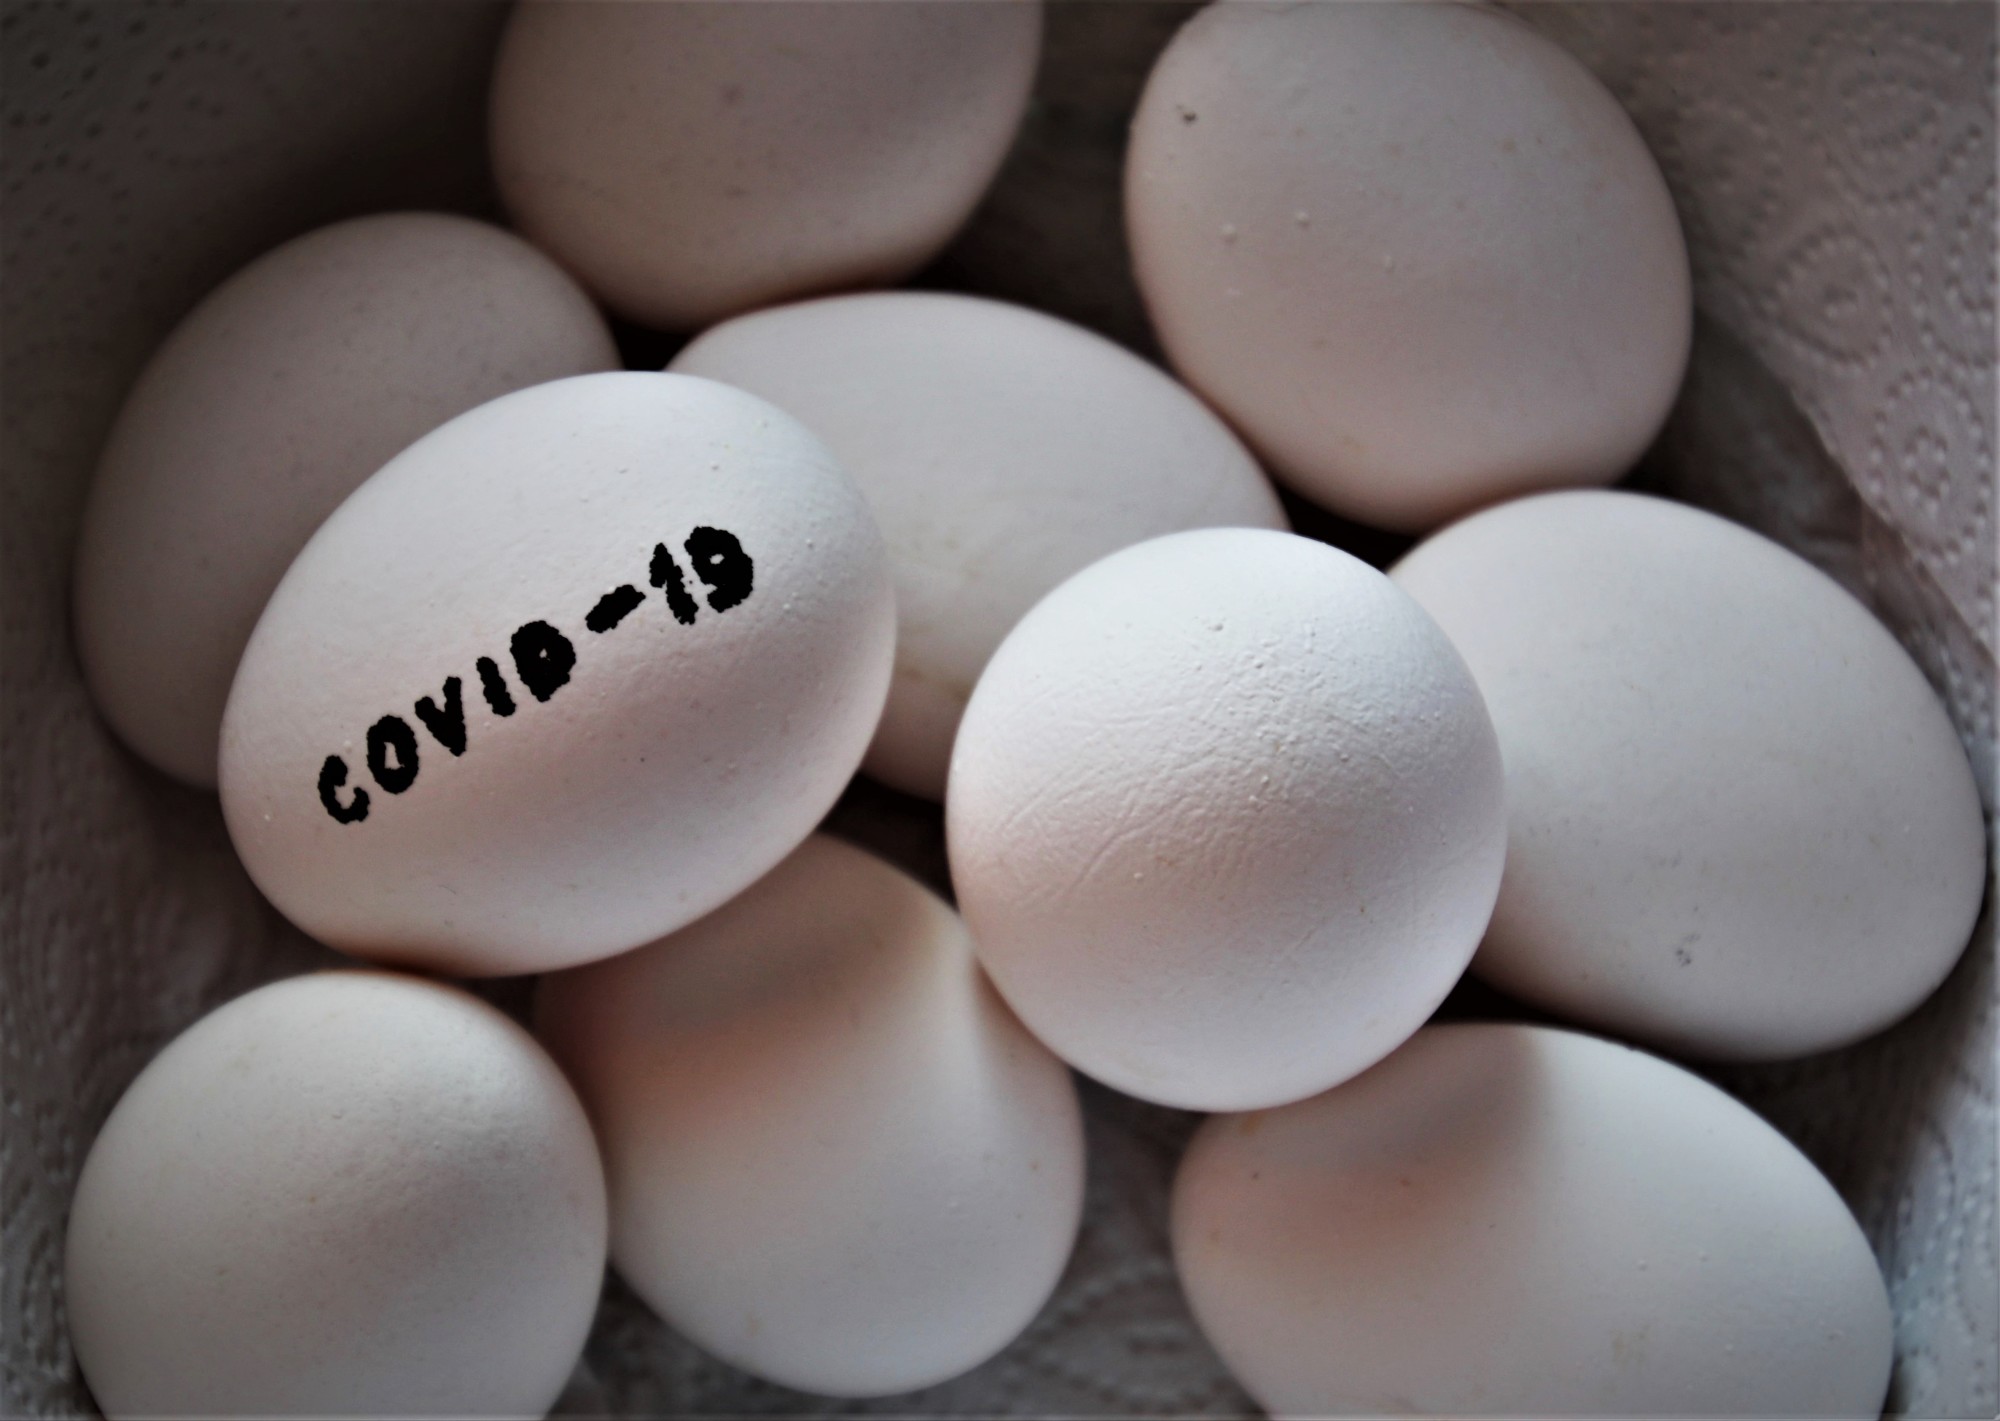 鸡蛋标记为COIVD-9